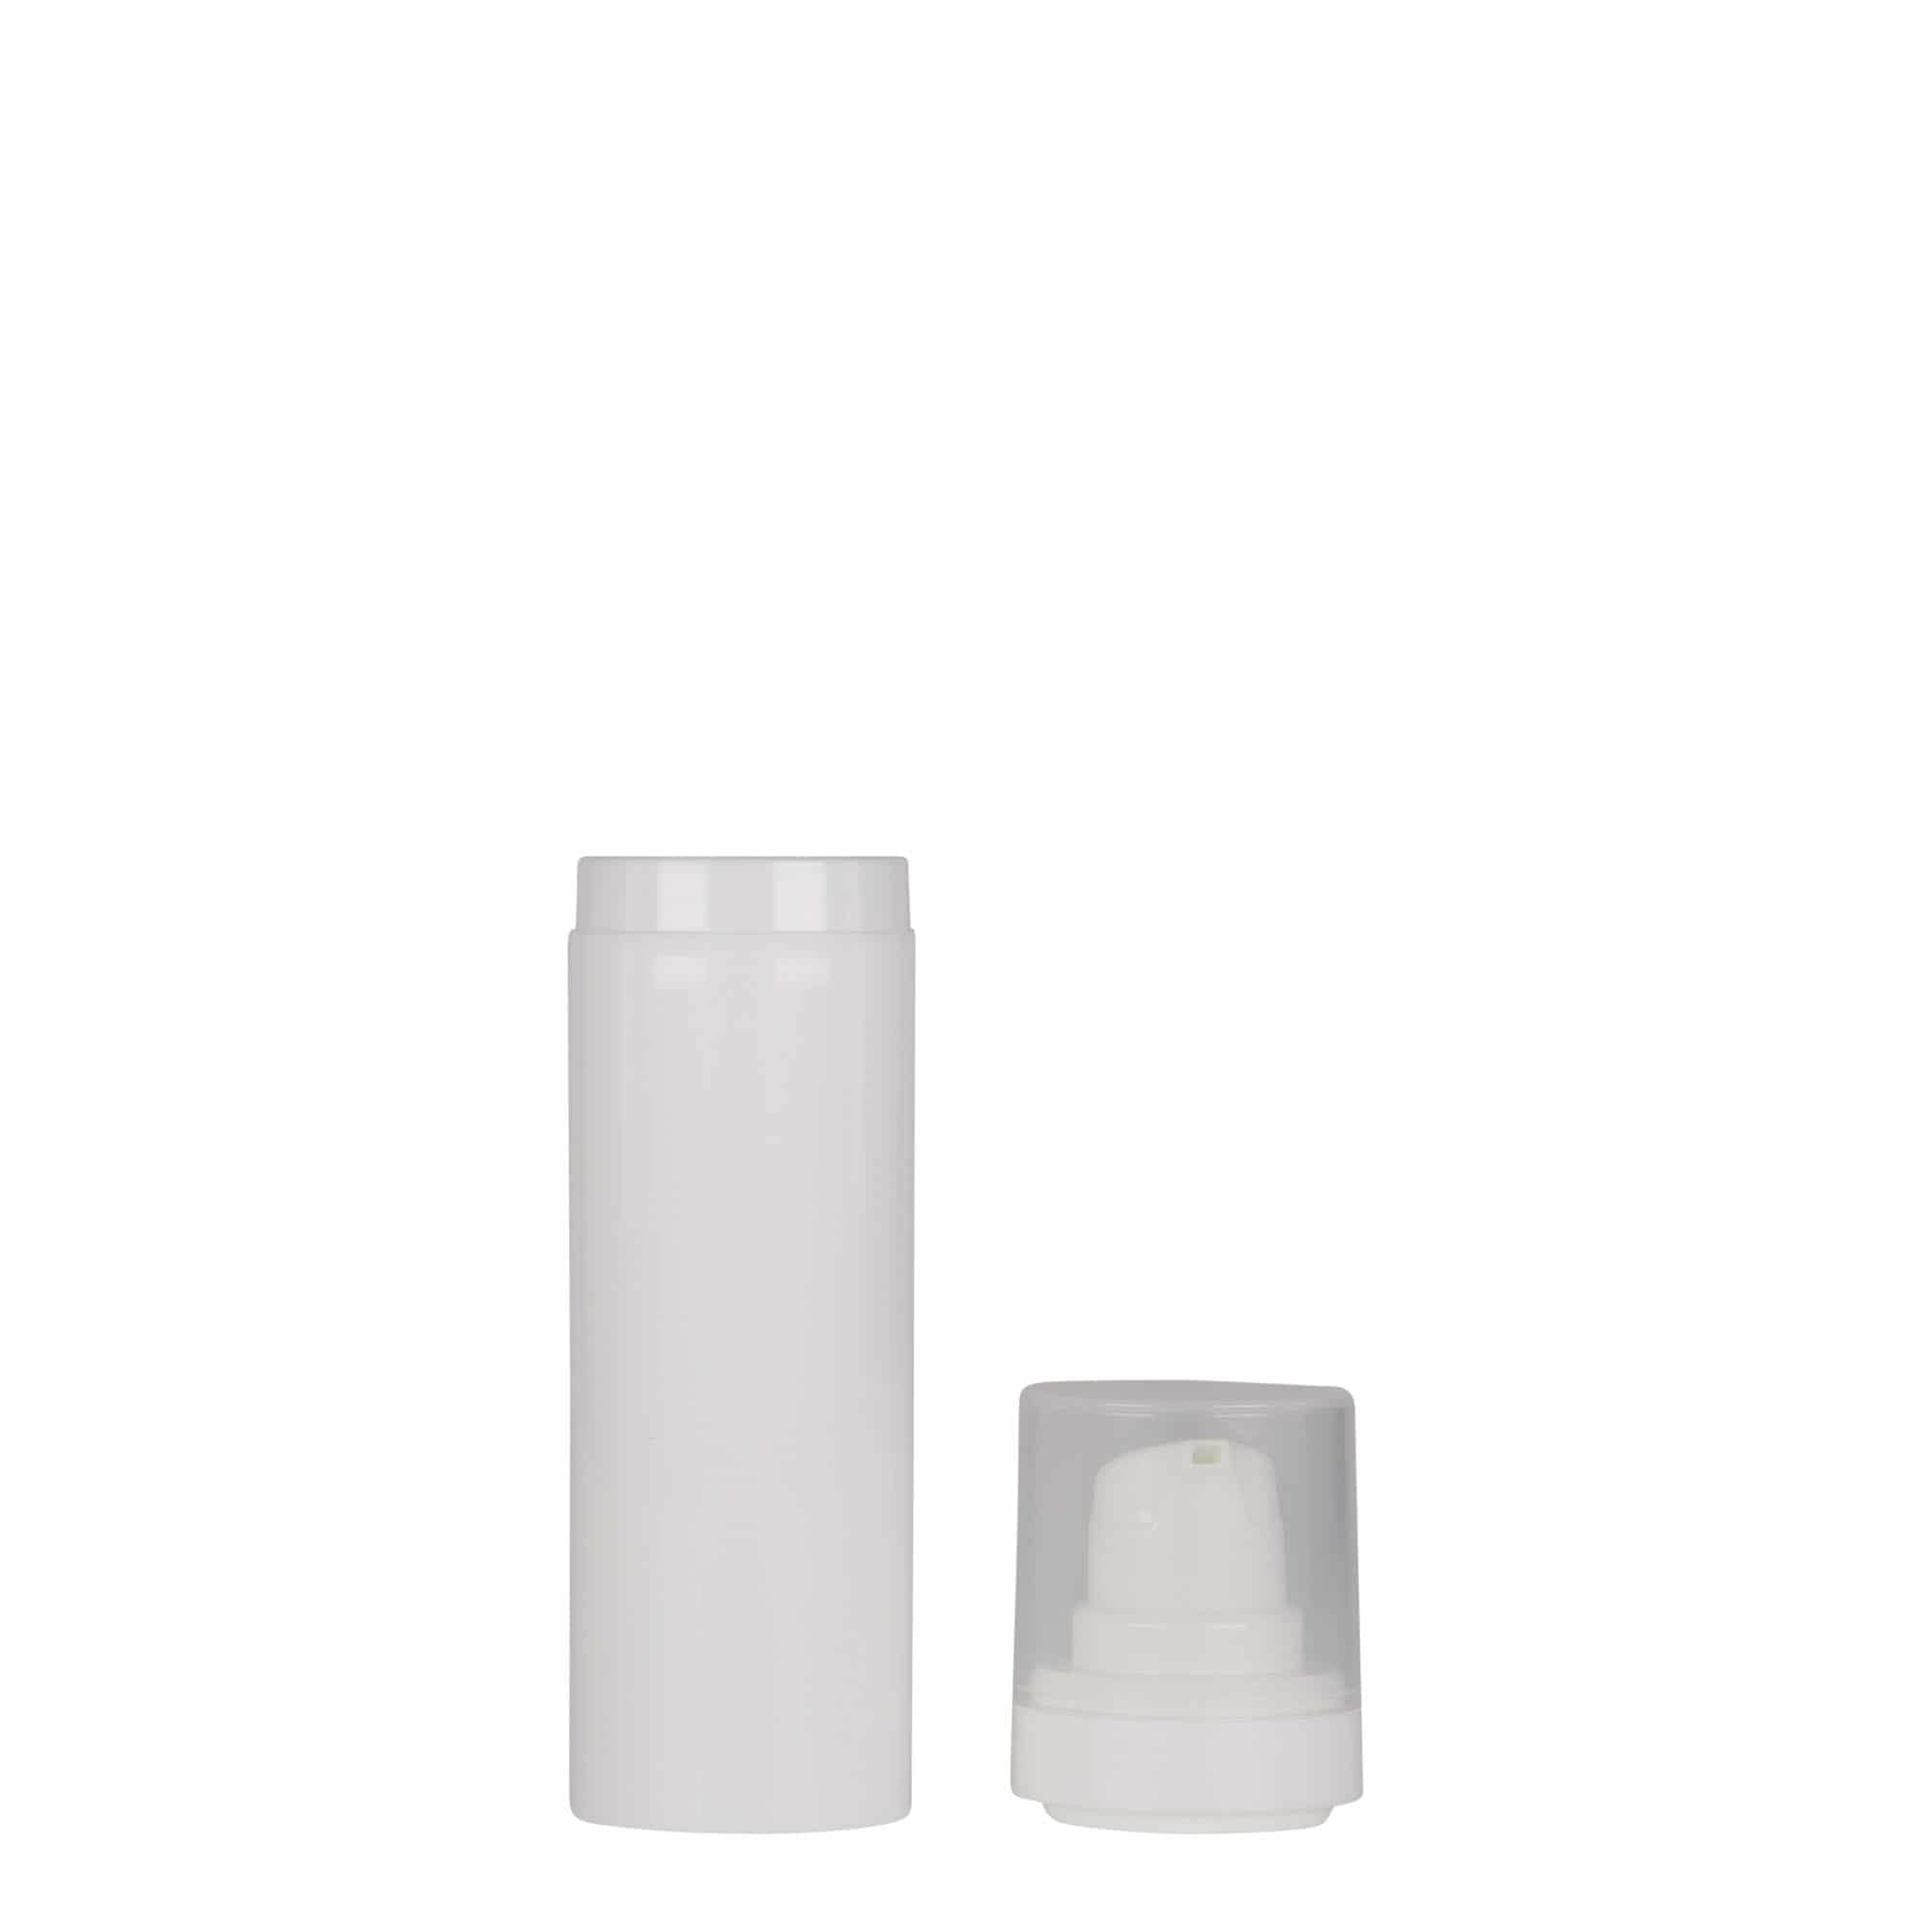 30 ml dozownik airless 'Micro', tworzywo sztuczne PP, kolor biały